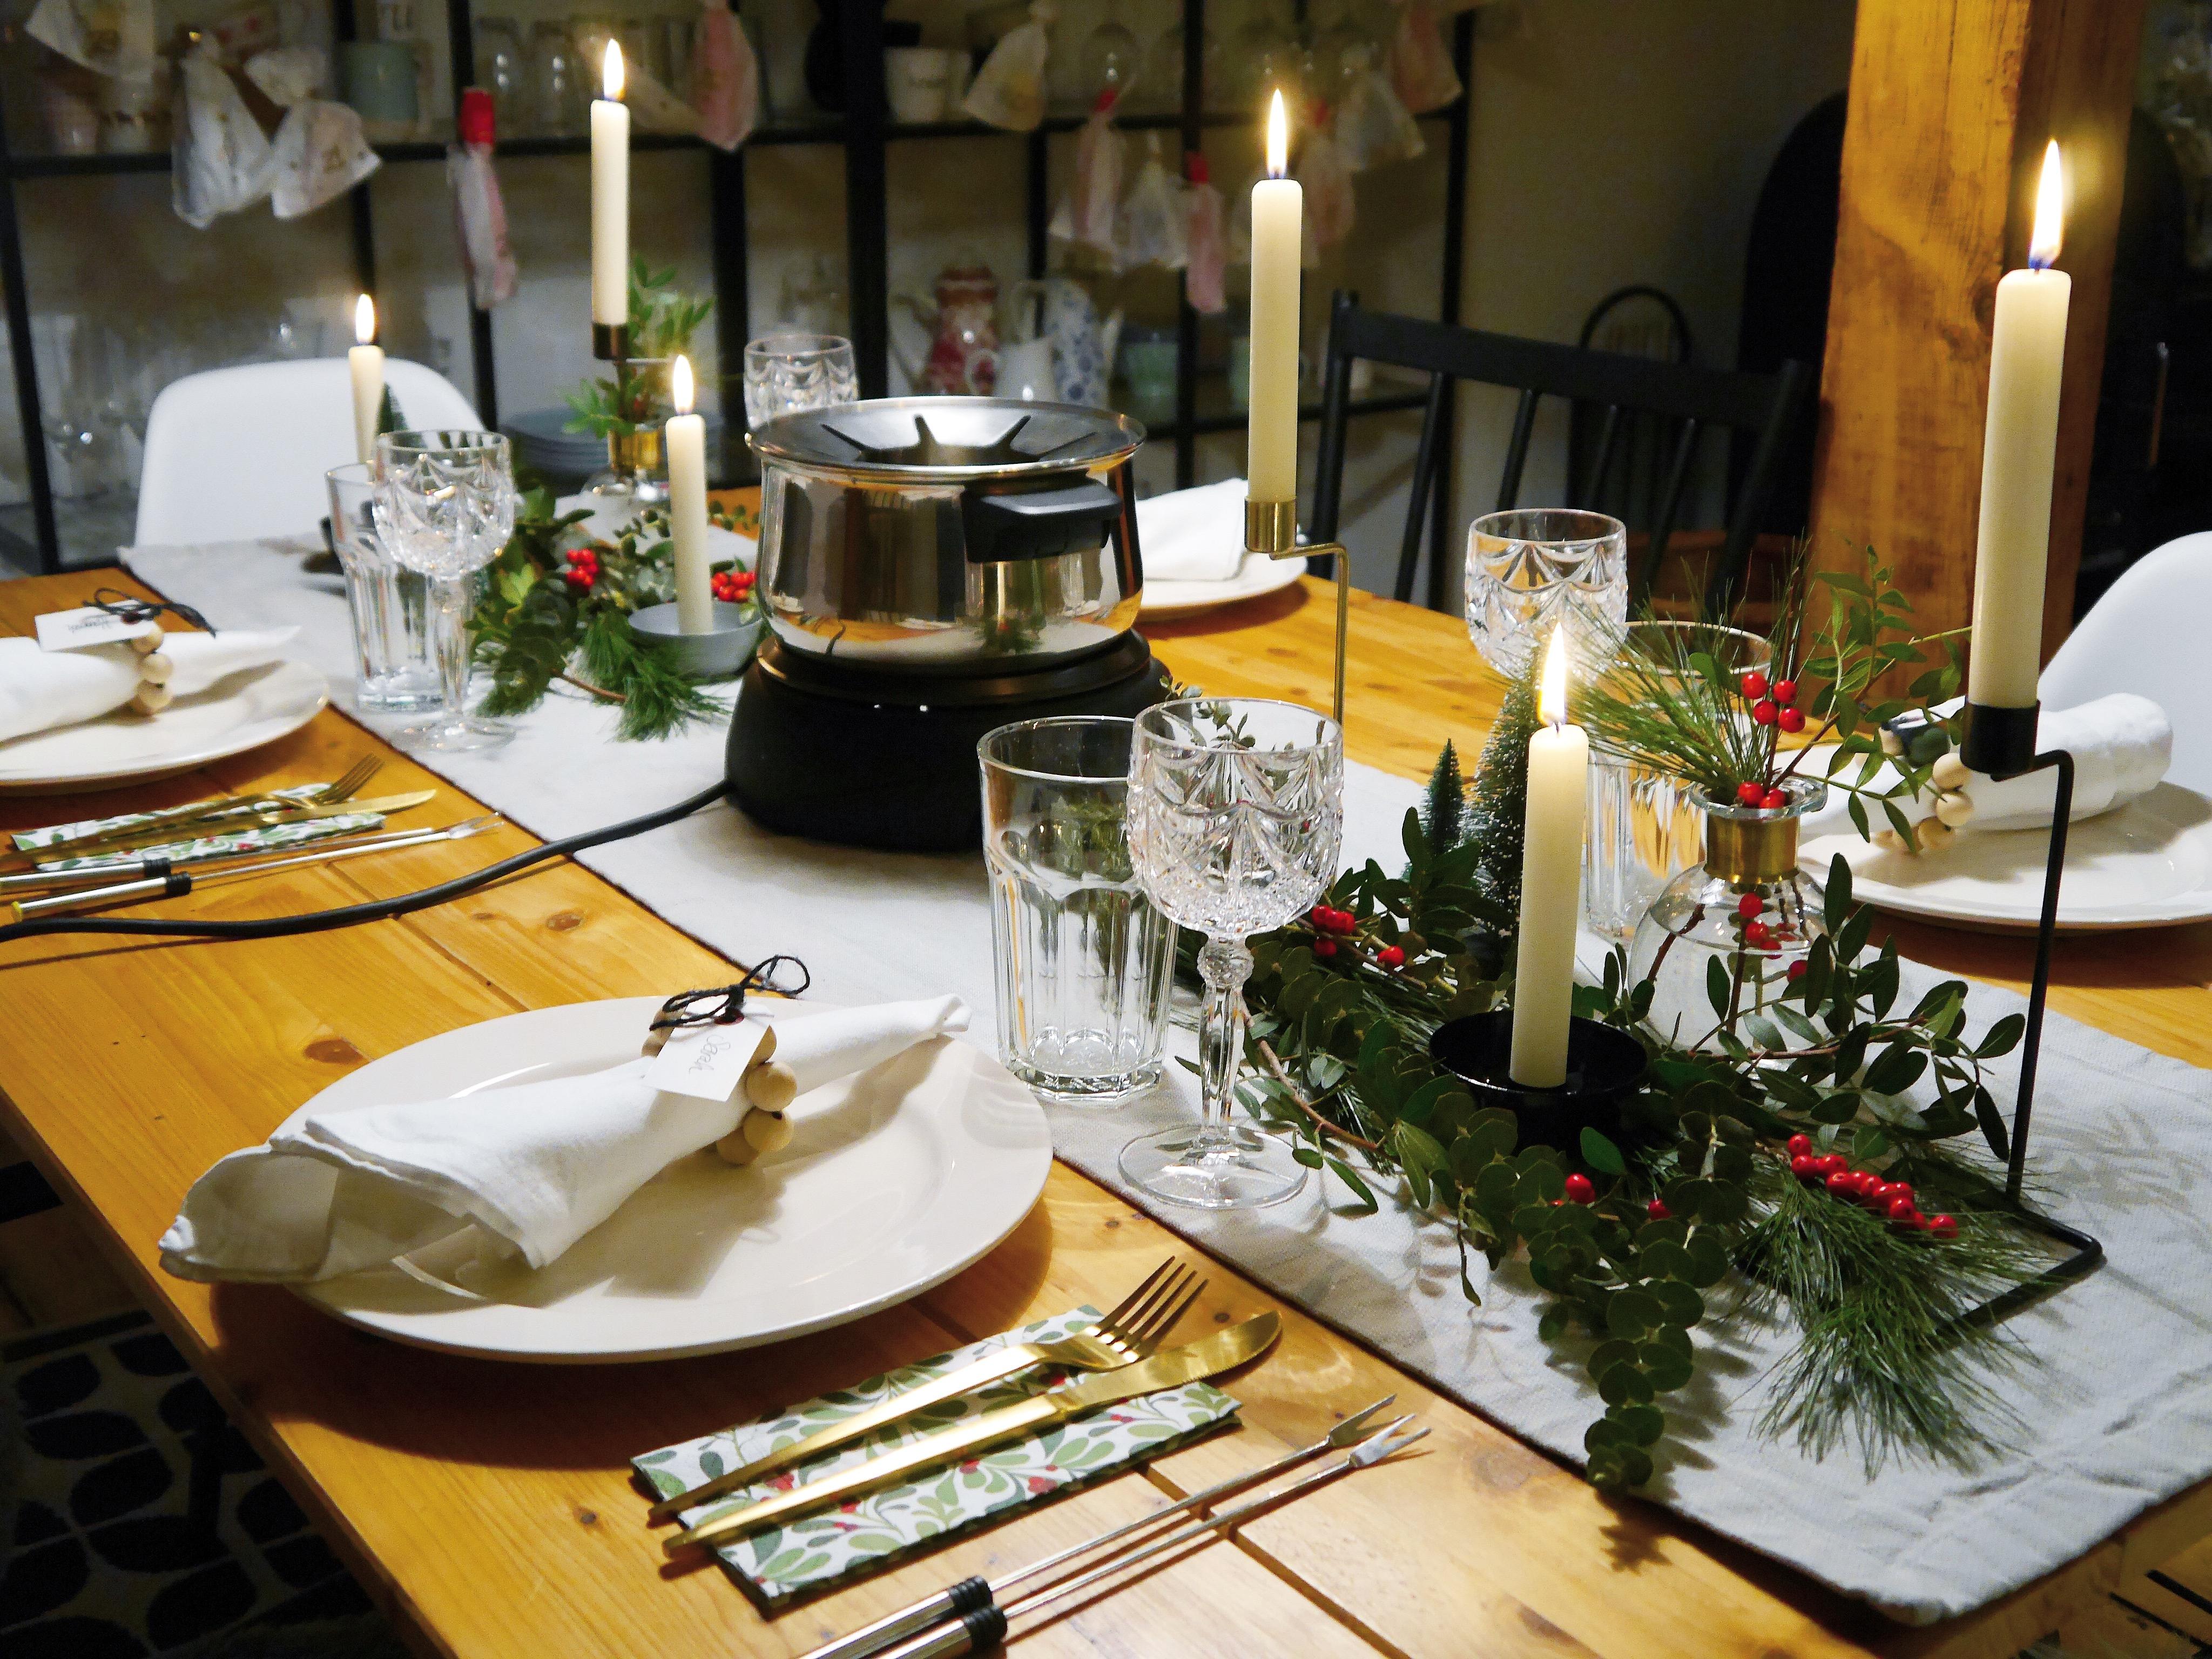 #xmasdeko #dekoliebe 2.0 wir haben testweise schonmal für Heiligabend dekoriert - Tischdeko #julafton